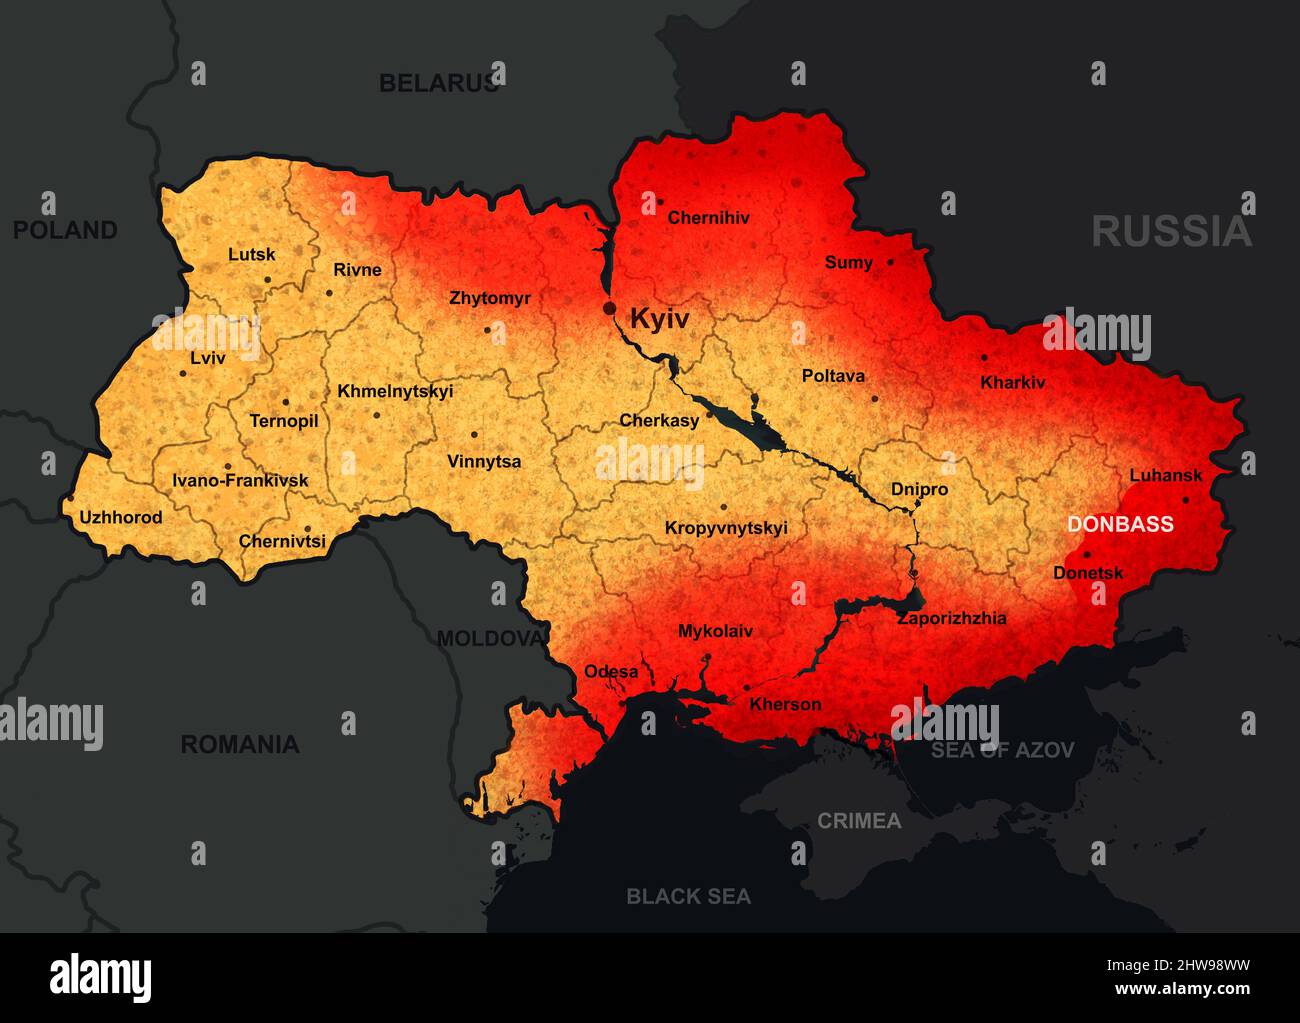 Guerra in Ucraina sulla mappa, illustrazione dell'invasione russa generale in Ucraina. Territorio ucraino e confine con la regione di Donbass. Russia-Ucraina confli Foto Stock